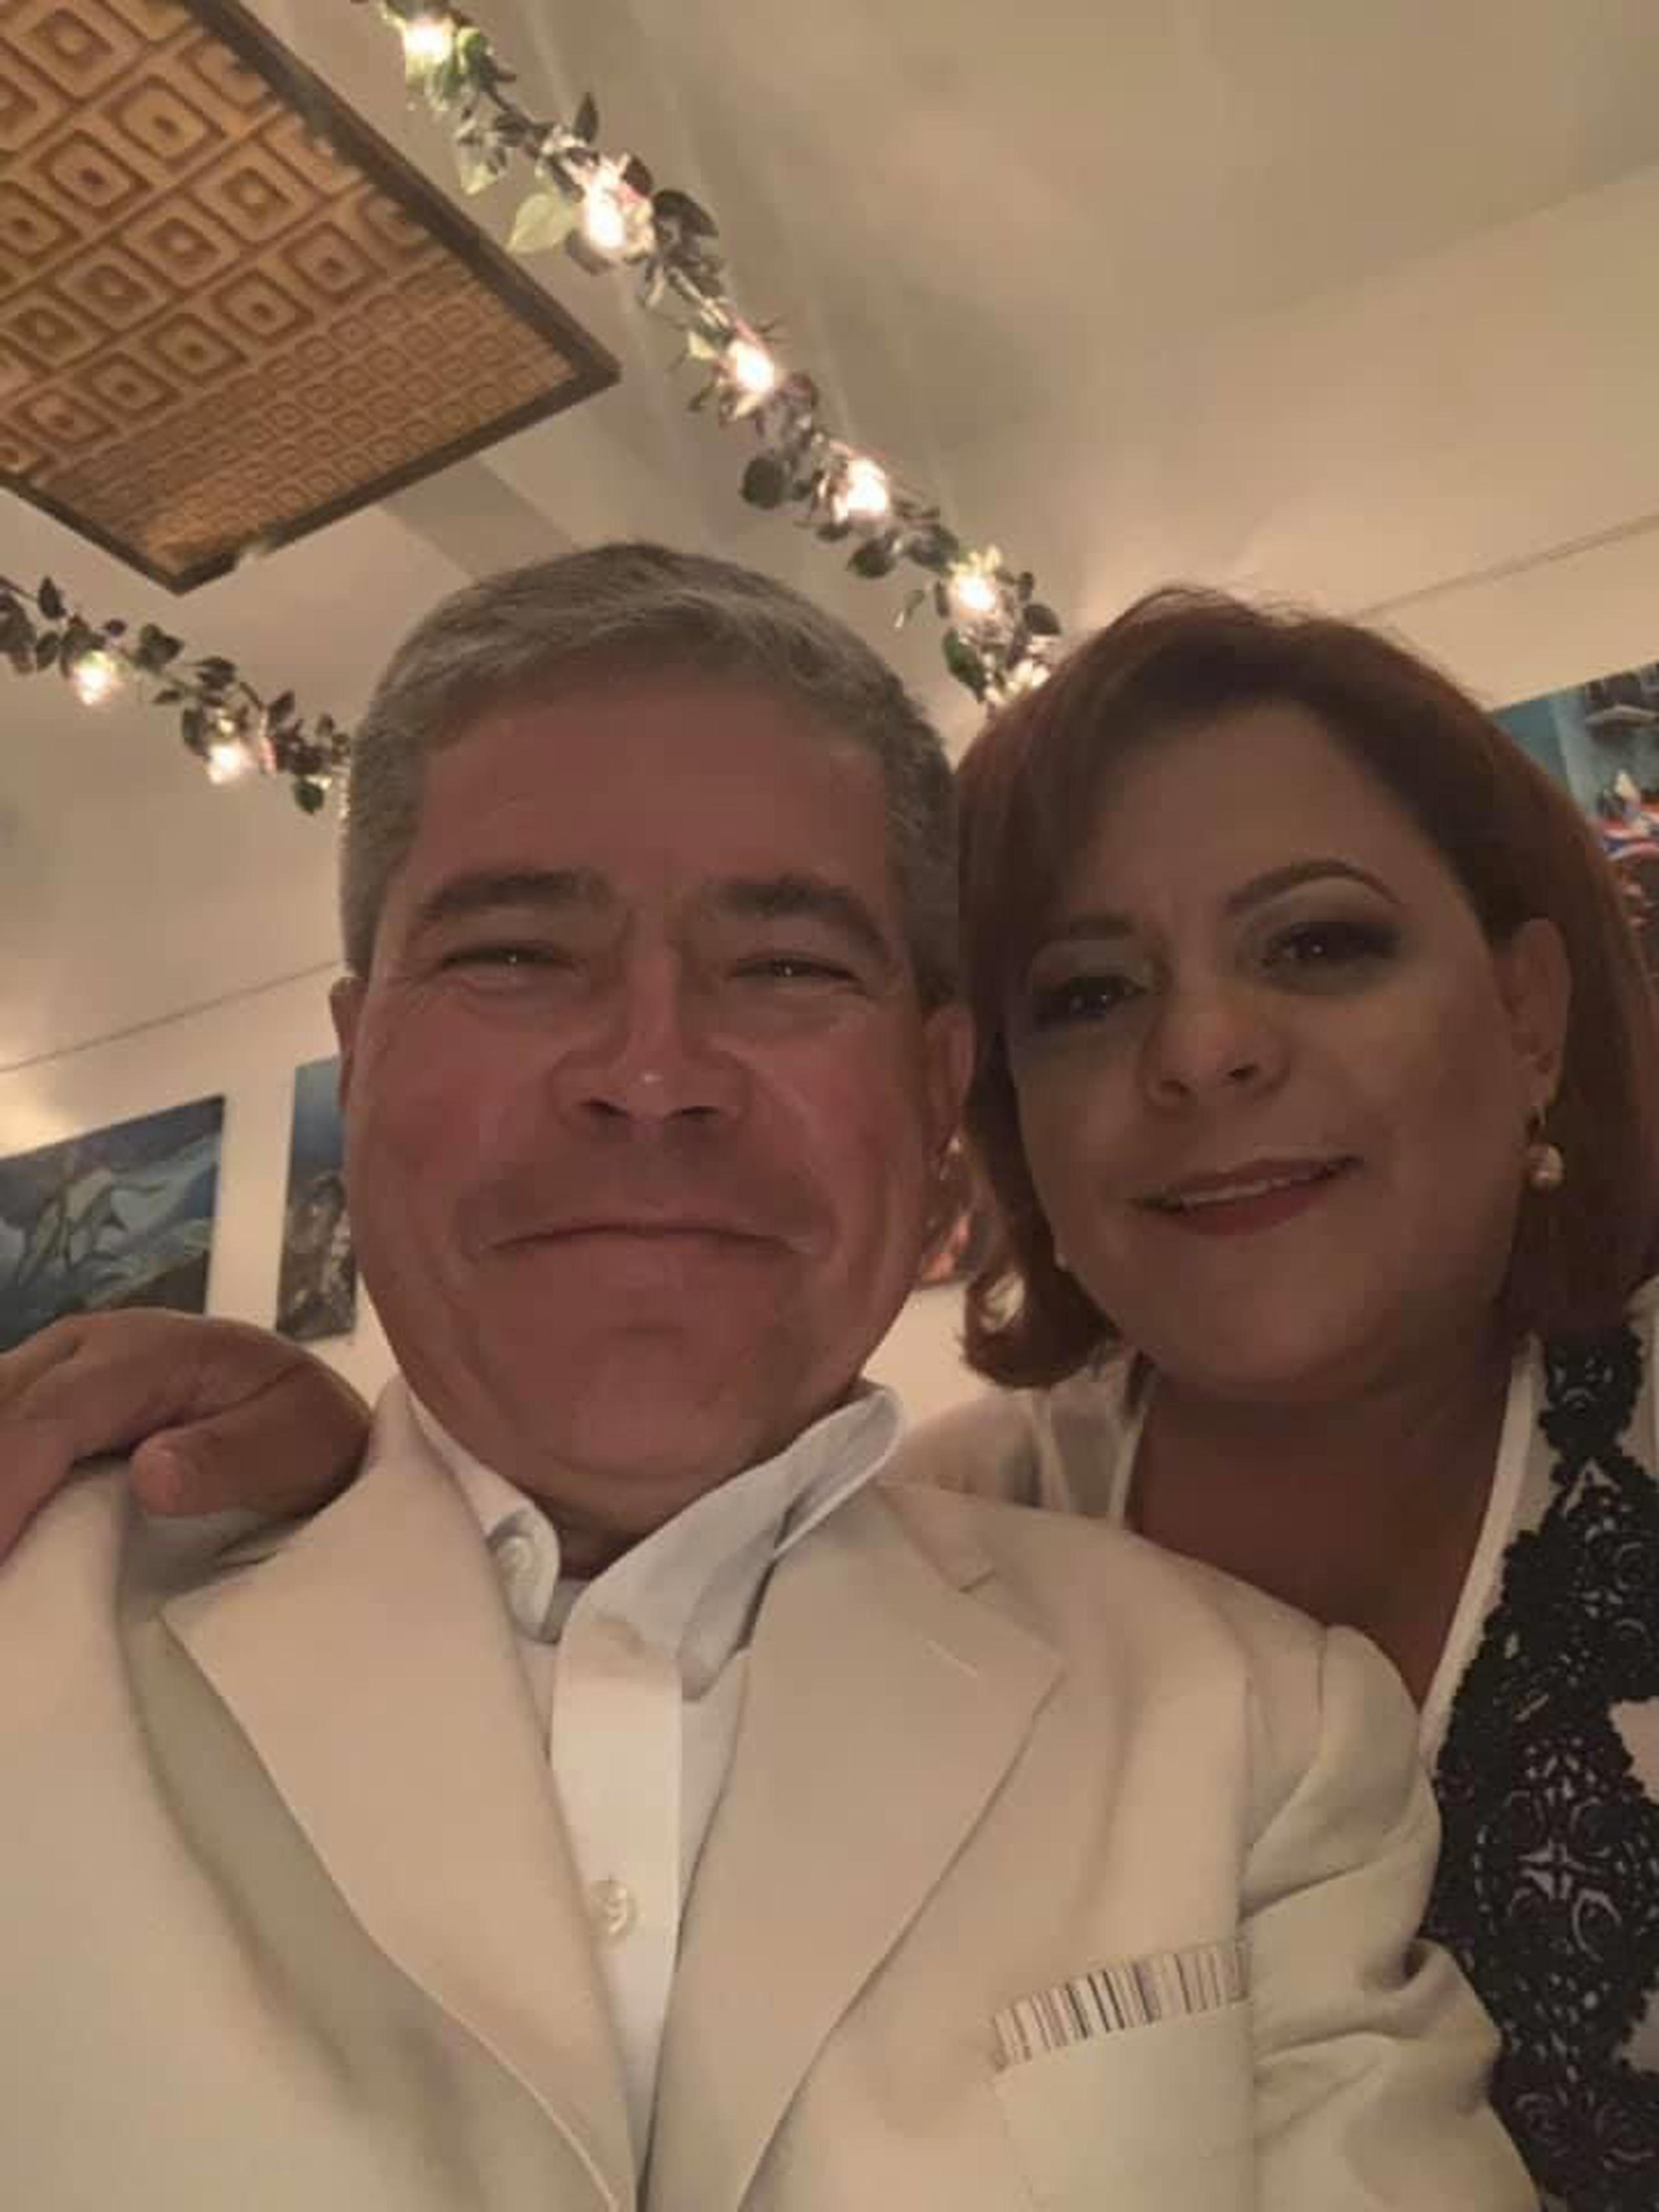 La alcaldesa de Aguadilla, Yanitsia Irizarry Méndez, pidió espacio por la muerte de su compañero de vida, Wilfredo Rodríguez.